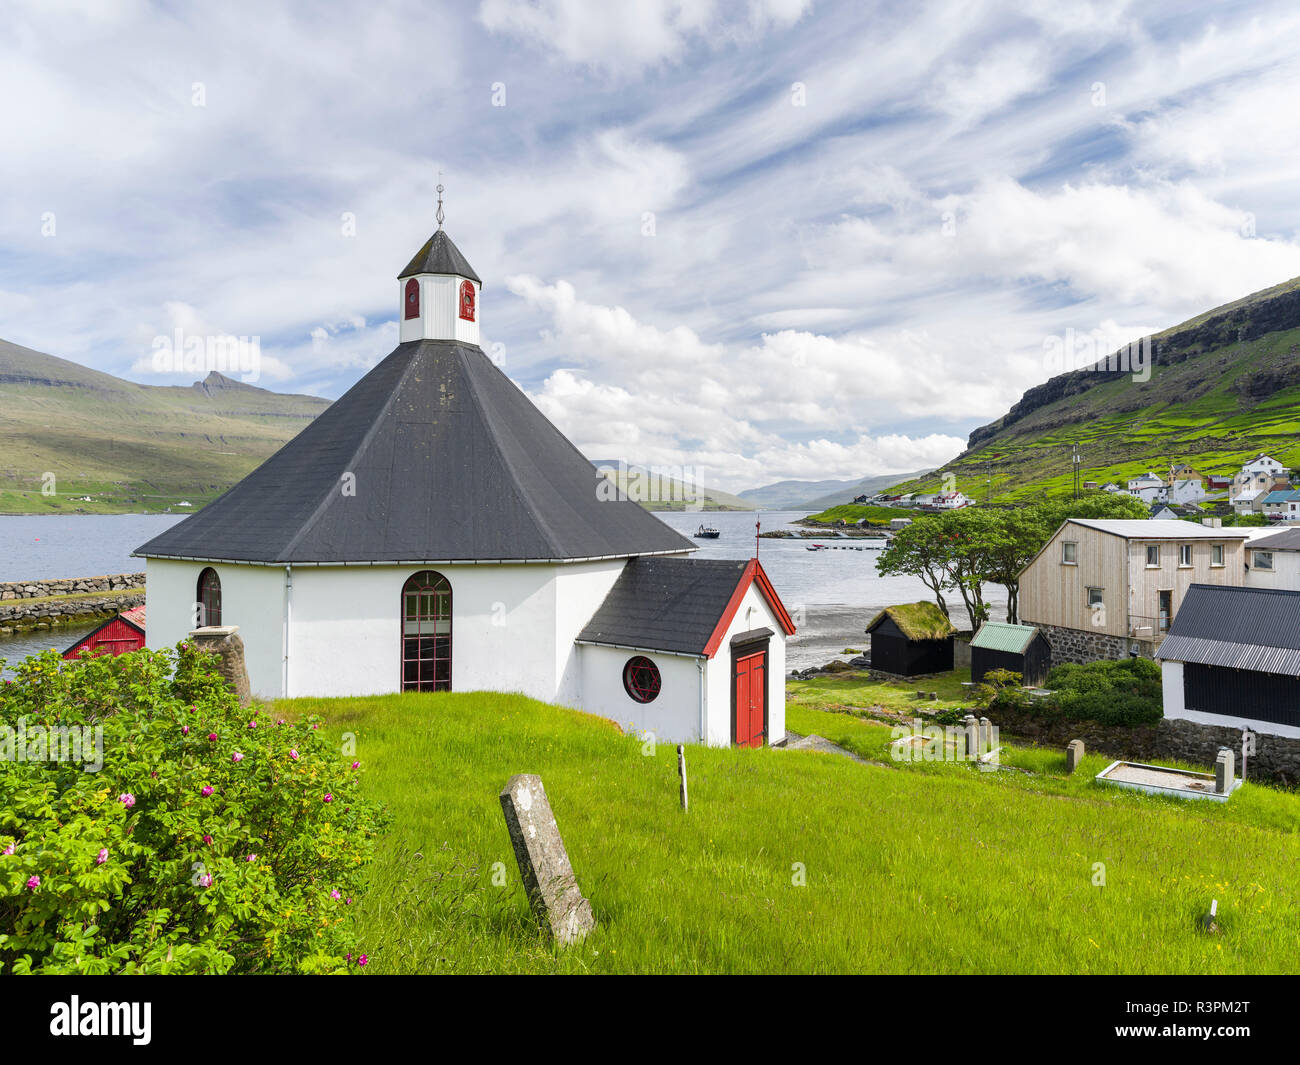 Village Haldarsvik am Sundini, Eysturoy in the background. Denmark, Faroe Islands Stock Photo